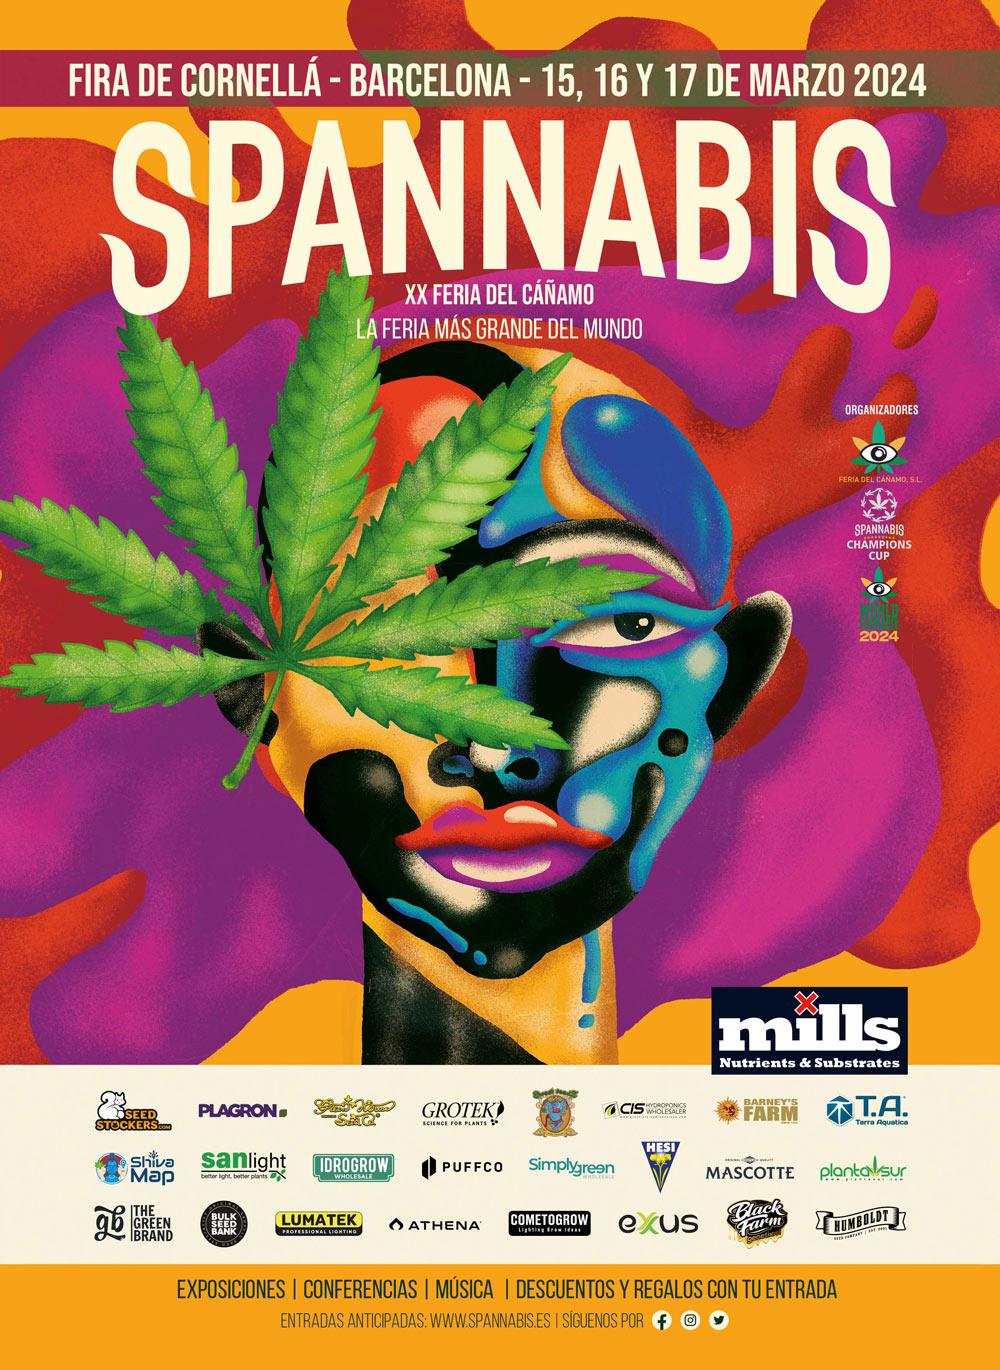 Spannabis Barcellona: Centro di cultura della cannabis